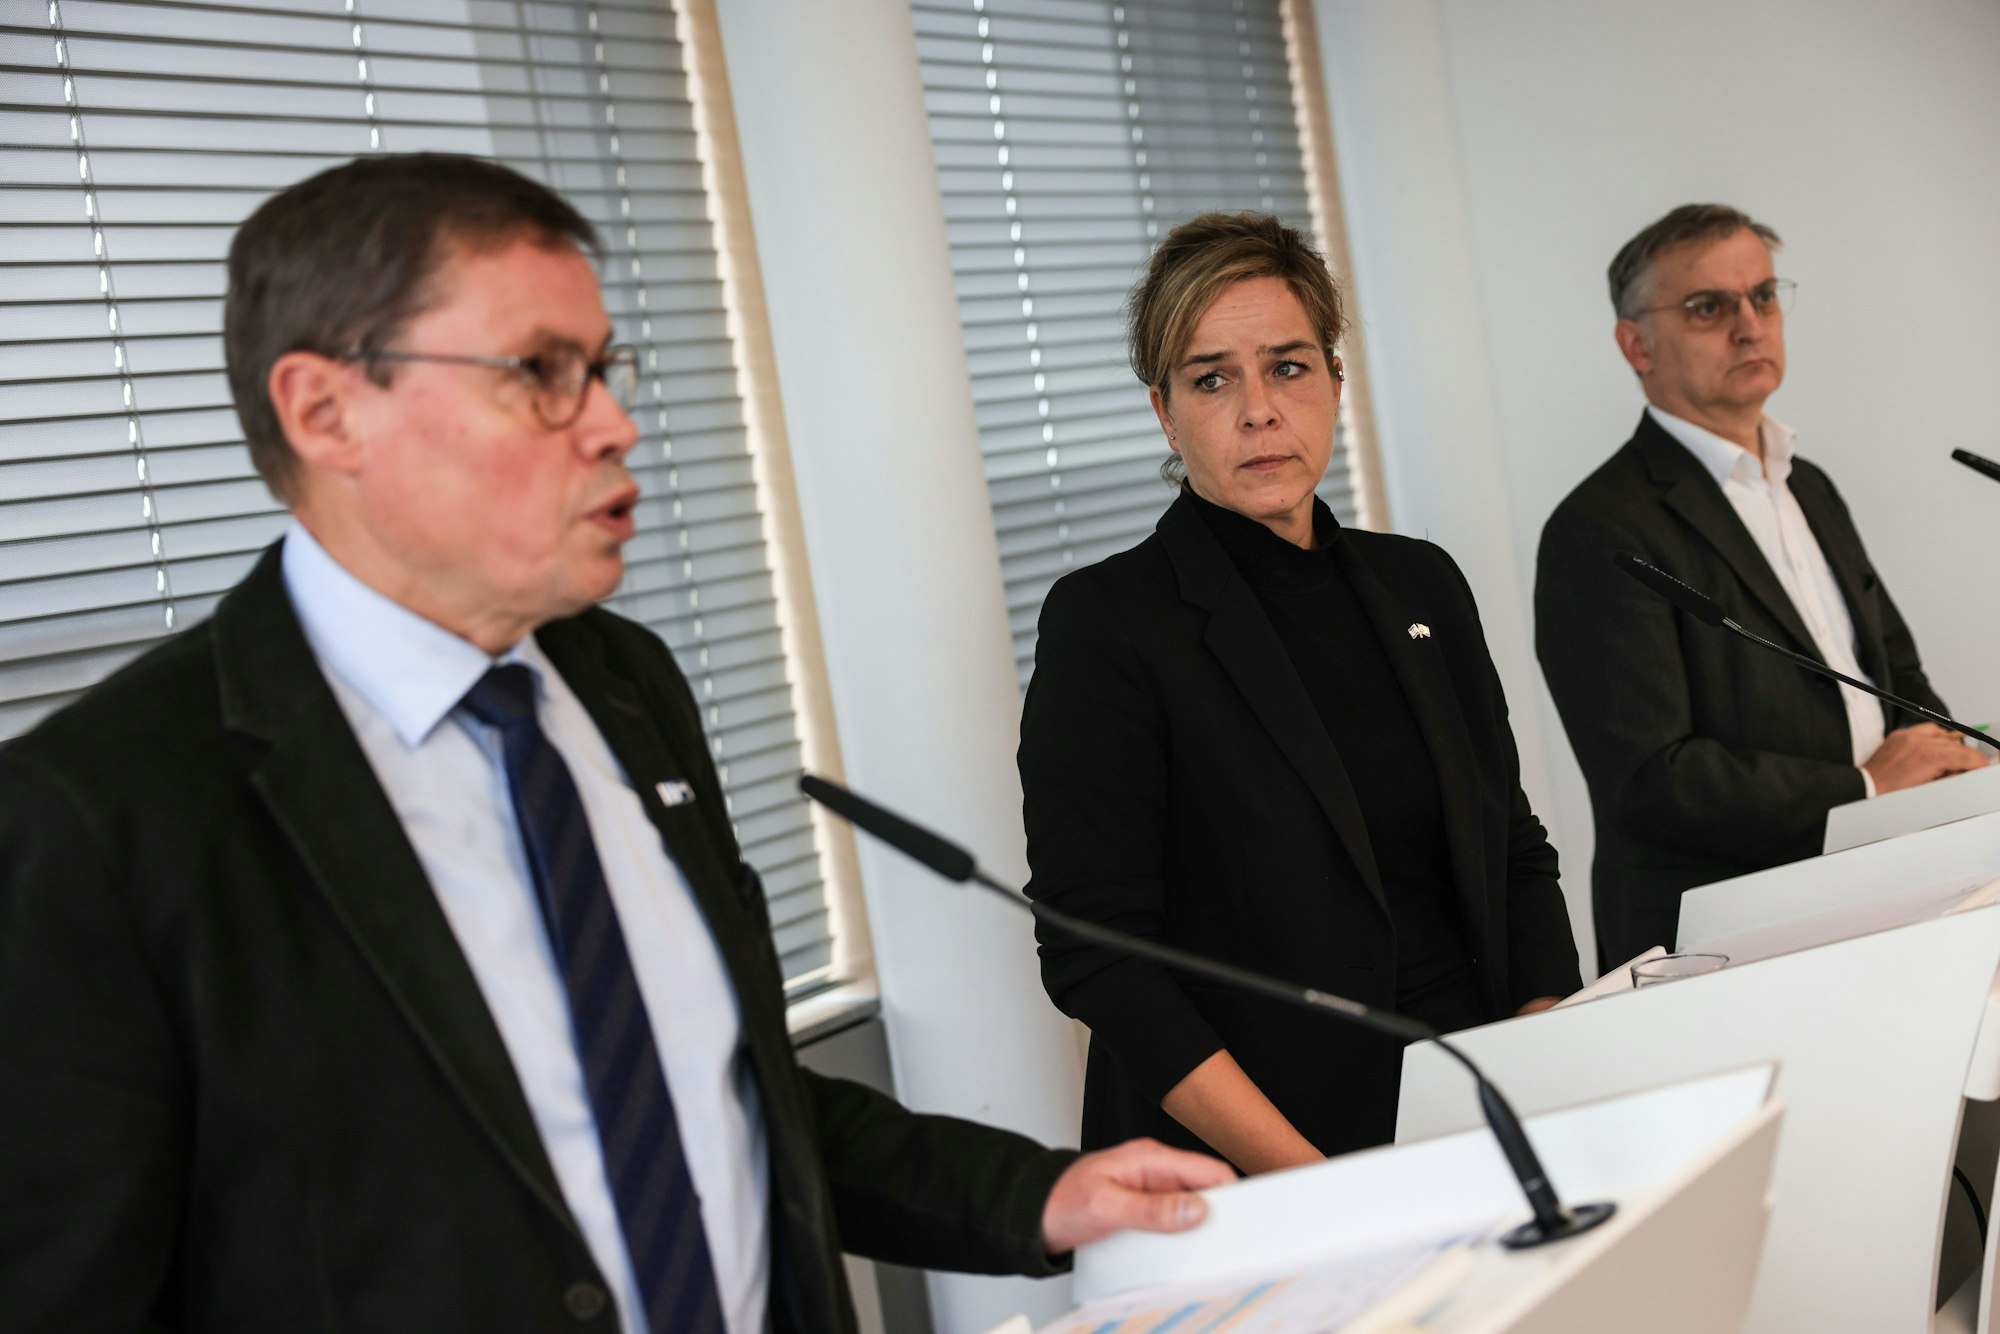 Der Präsident der IHK NRW Ralf Stoffels (links) und NRW-Wirtschaftsministerin Mona Neubaur begrüßen die vom Bund geplante Senkung der Stromsteuer für Unternehmen.